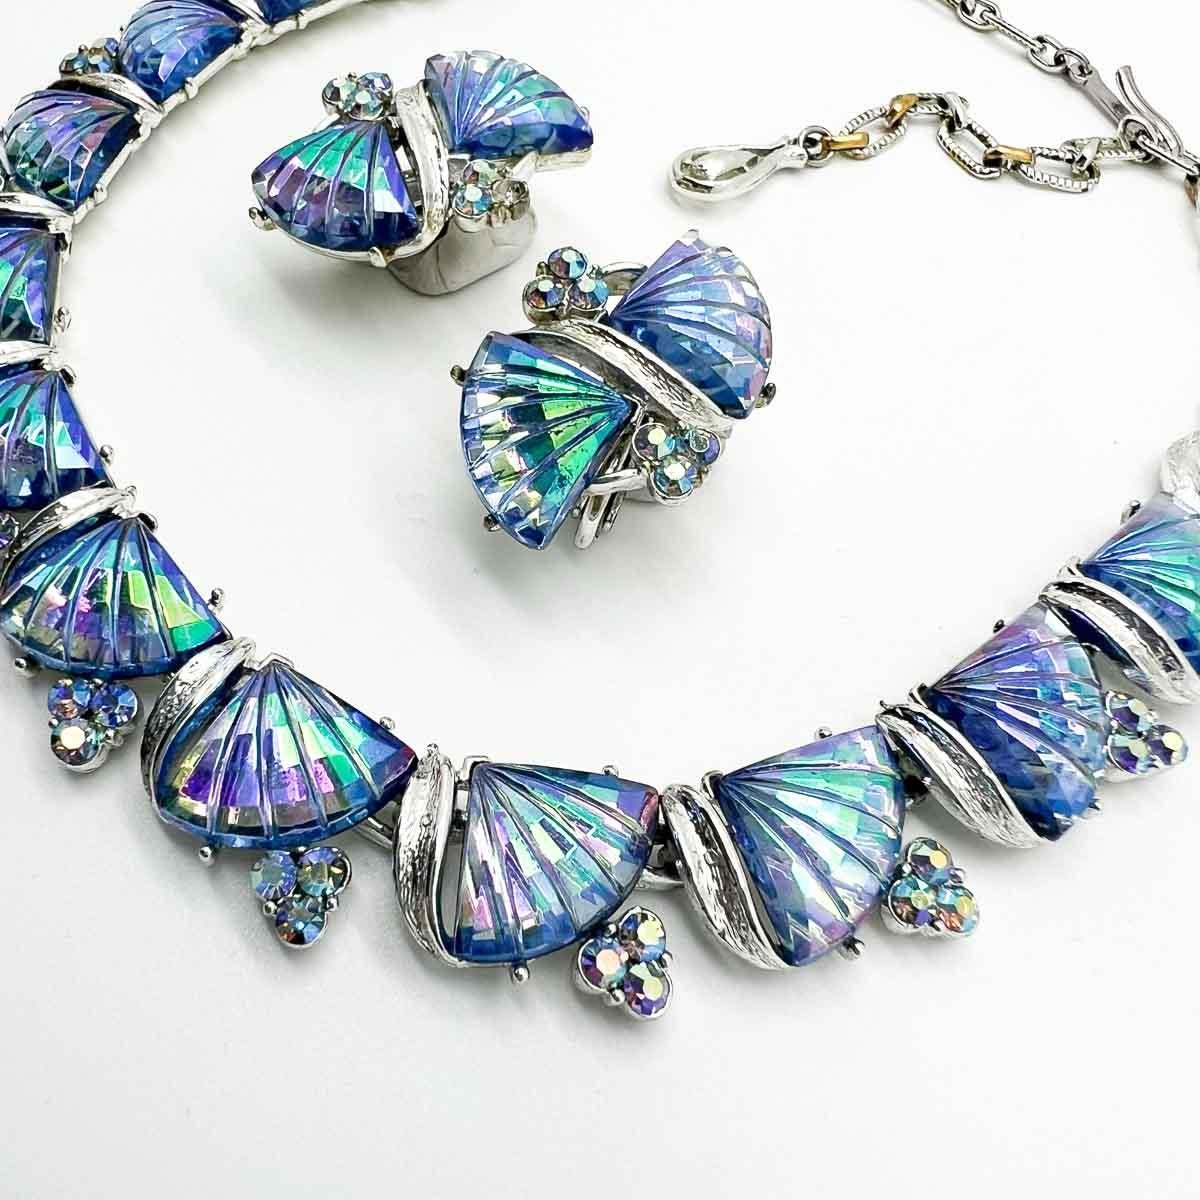 Eine Fächer-Halskette und Ohrringe von Vintage Jewelcraft bilden ein faszinierendes Schmuckset aus der Mitte des Jahrhunderts. Die Aurora-Borealis-Verarbeitung und die stilisierten Steine mit Blumenmotiven sorgen trotz ihrer siebzigjährigen